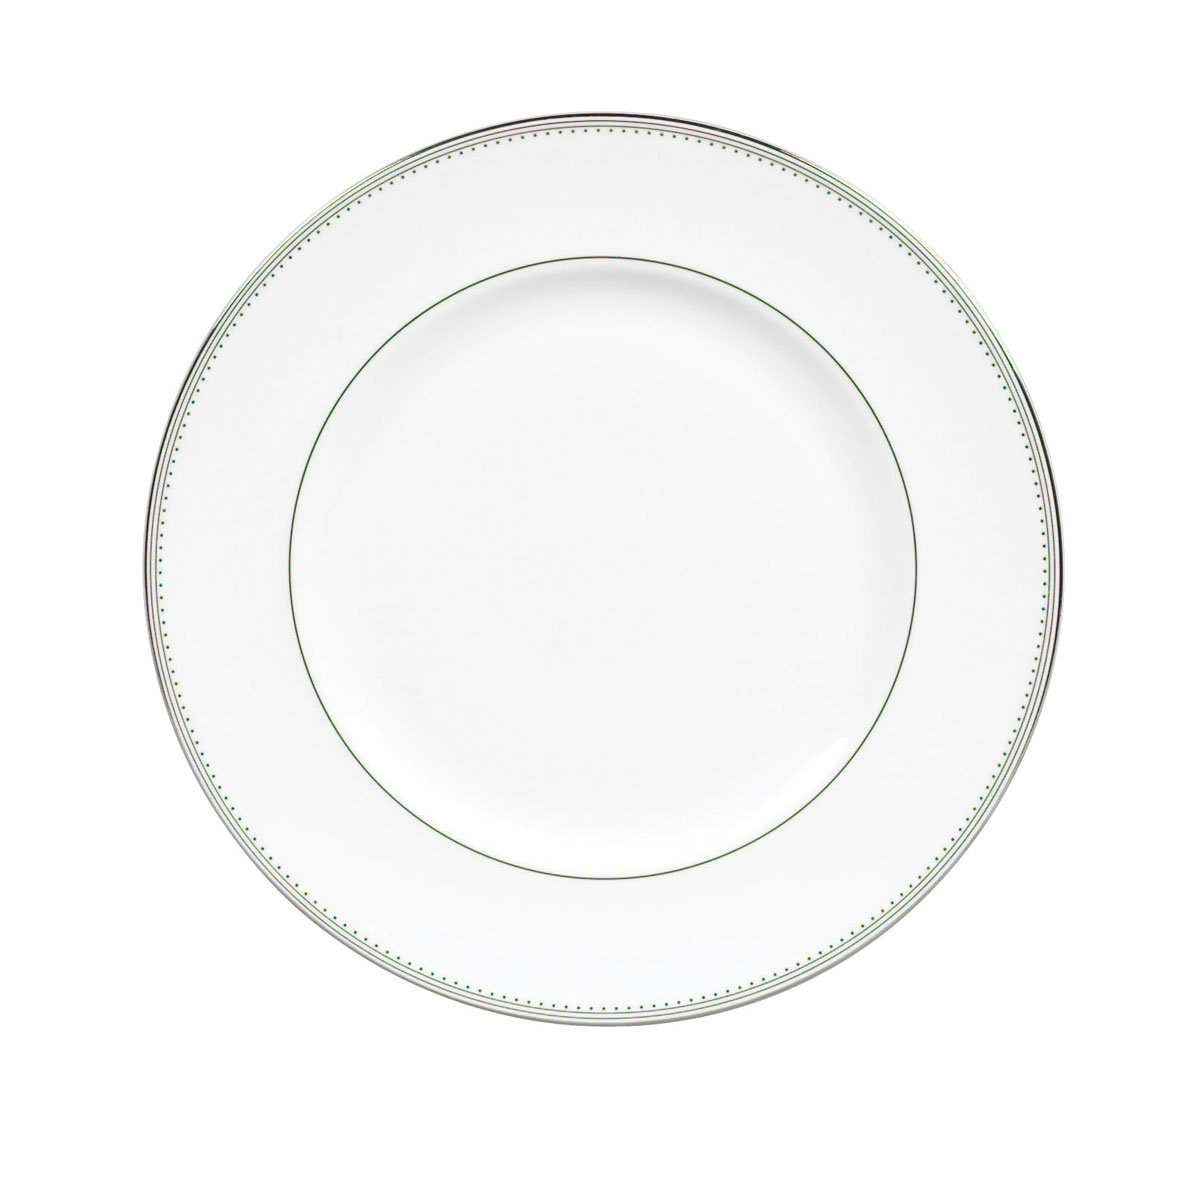 Vera Wang Wedgwood Grosgrain Dinner Plate, Single